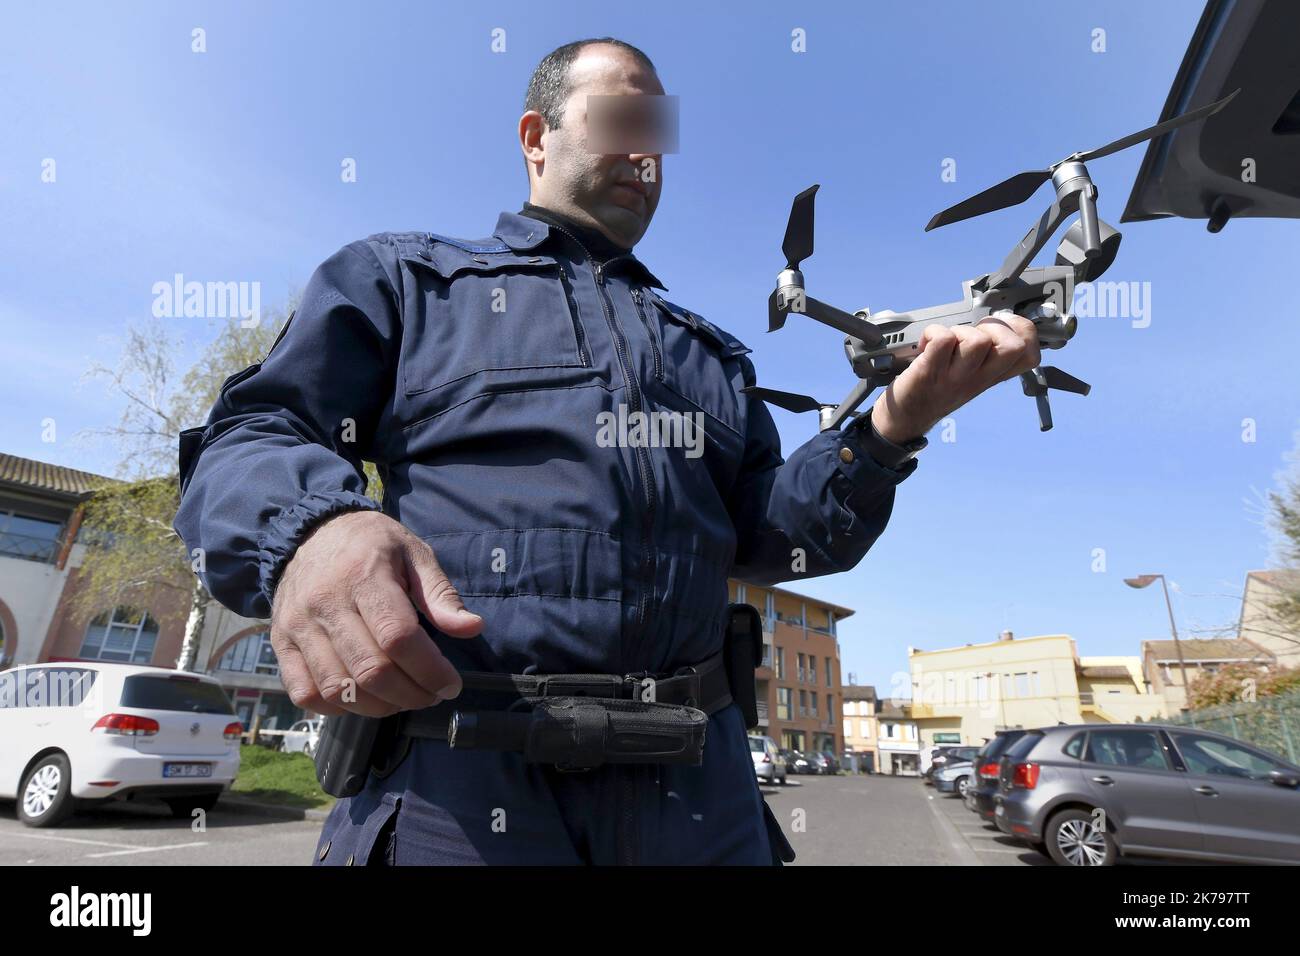 Drone utilisé pour le contrôle des mesures anti-coronavirus. France Muret, 28 mars 2020 Banque D'Images